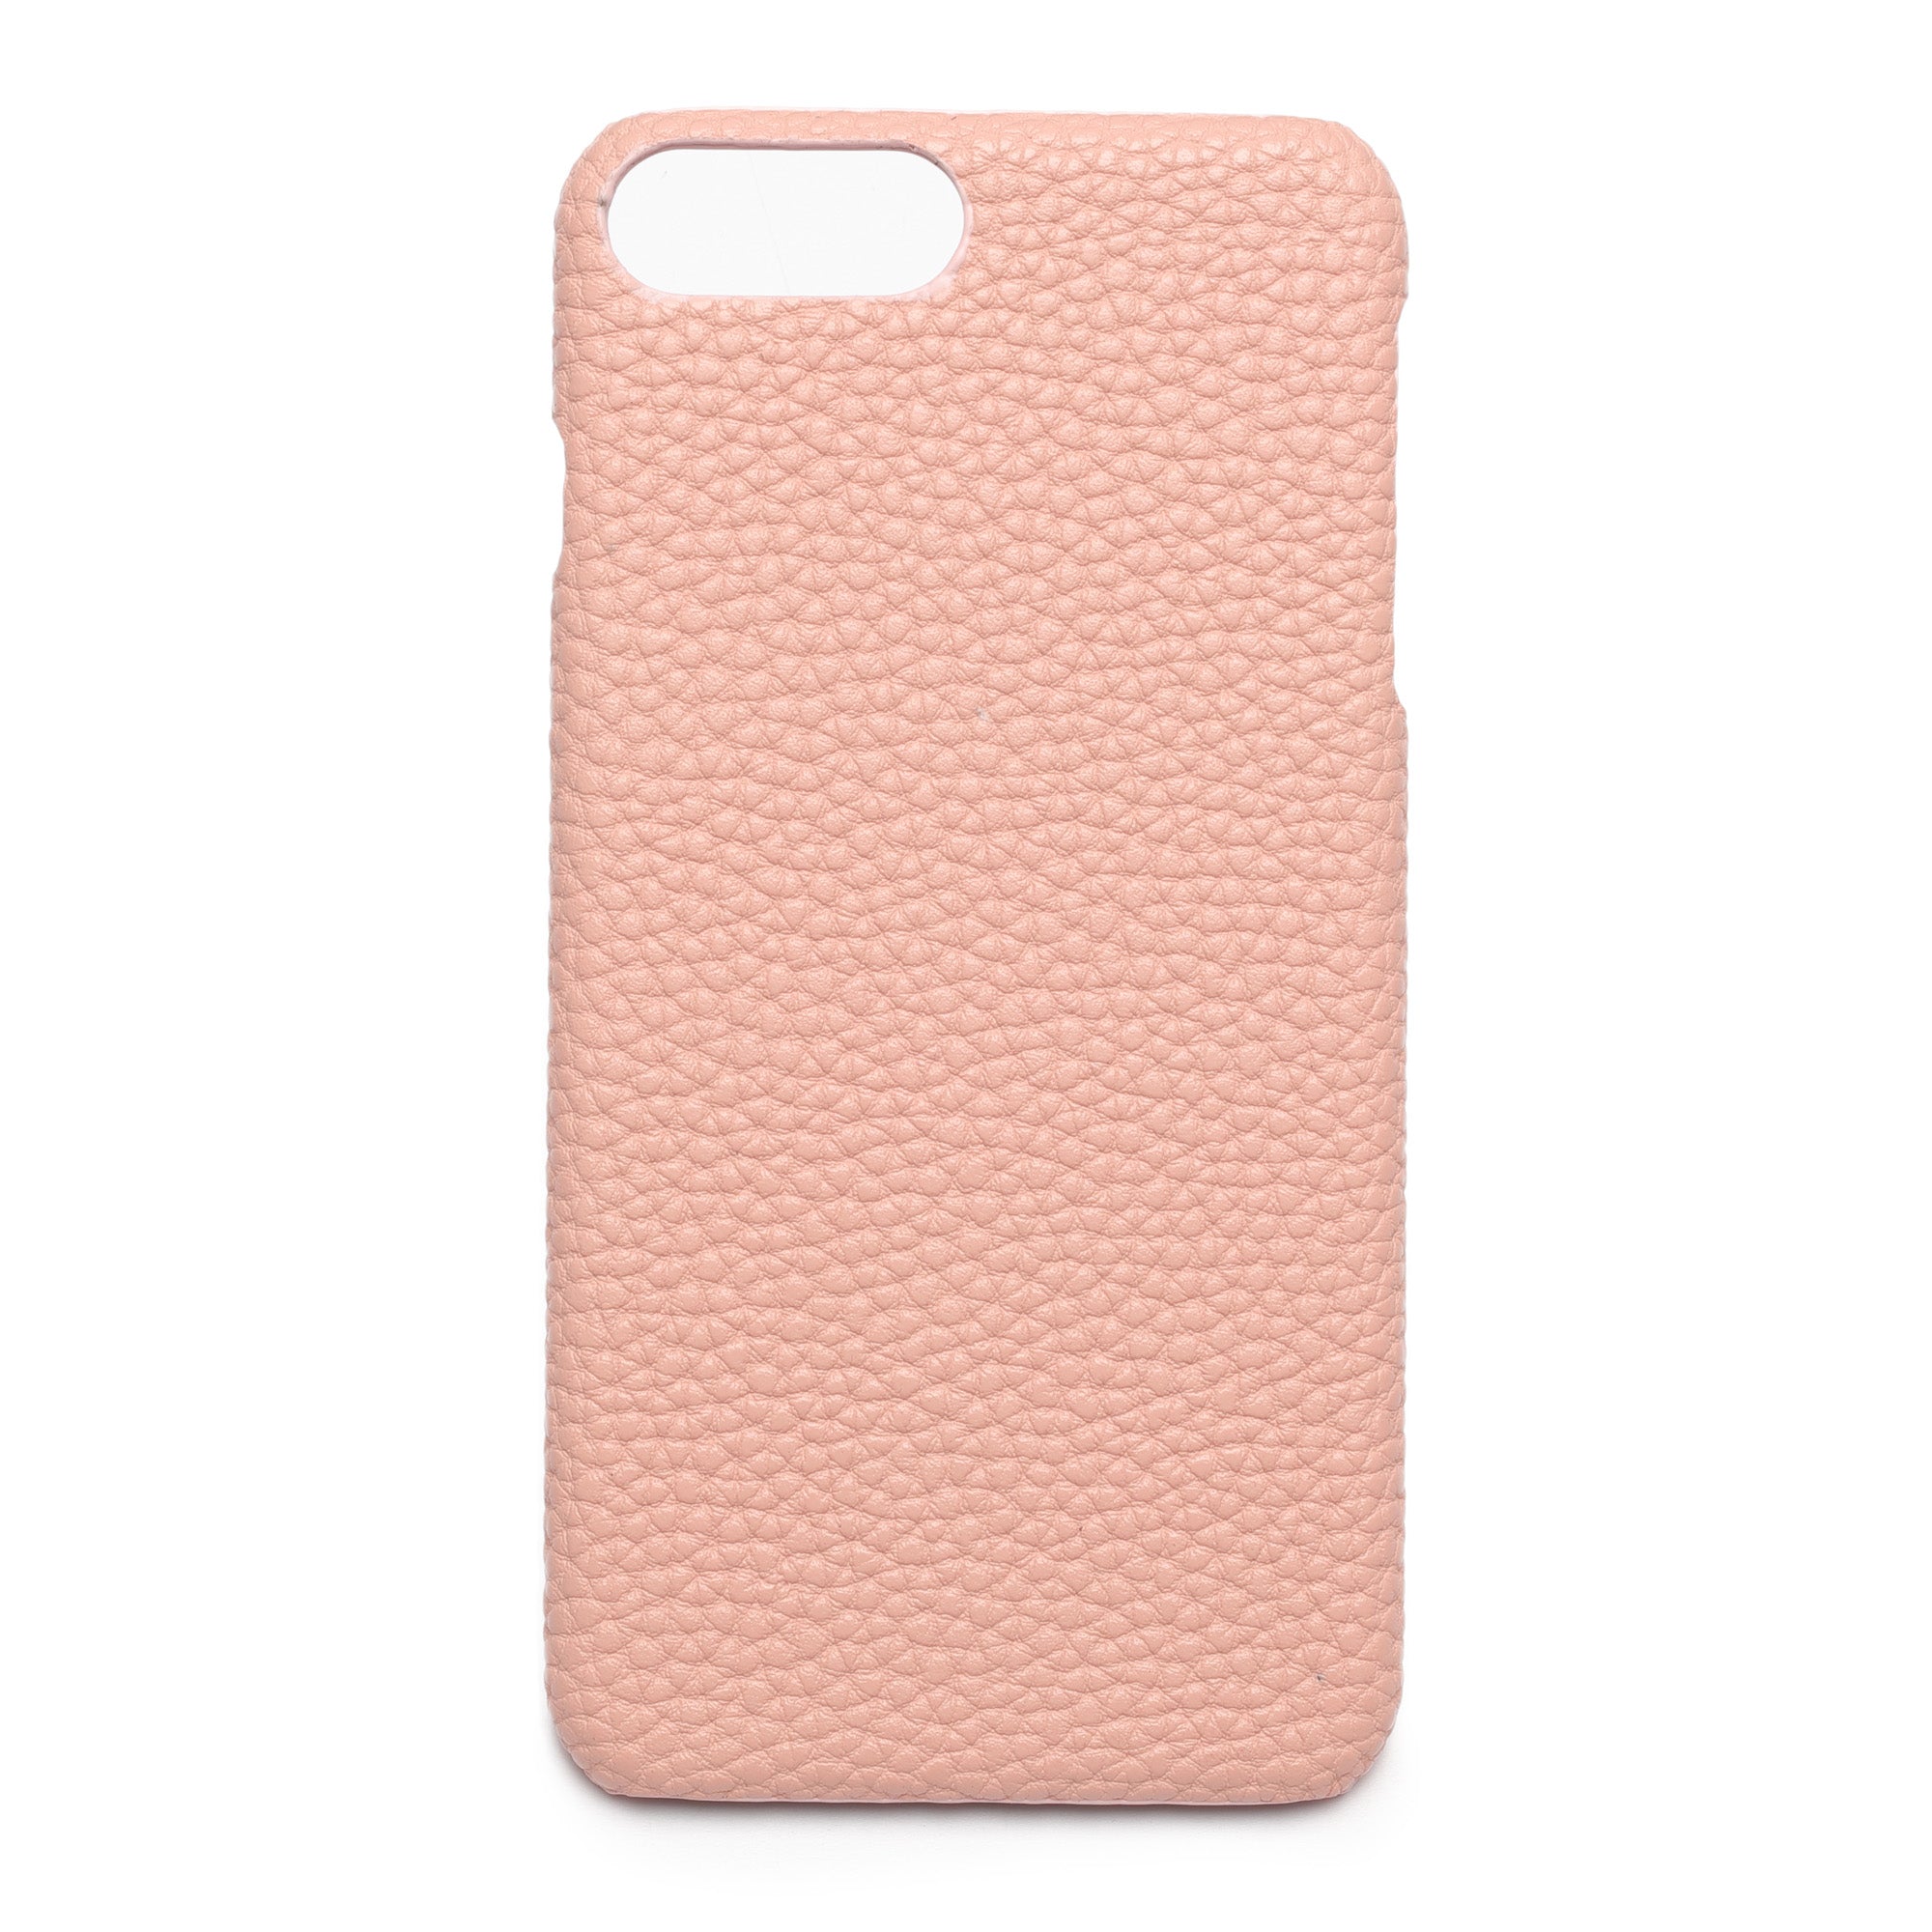 Blush Pink - iPhone 7 Plus / 8 Plus